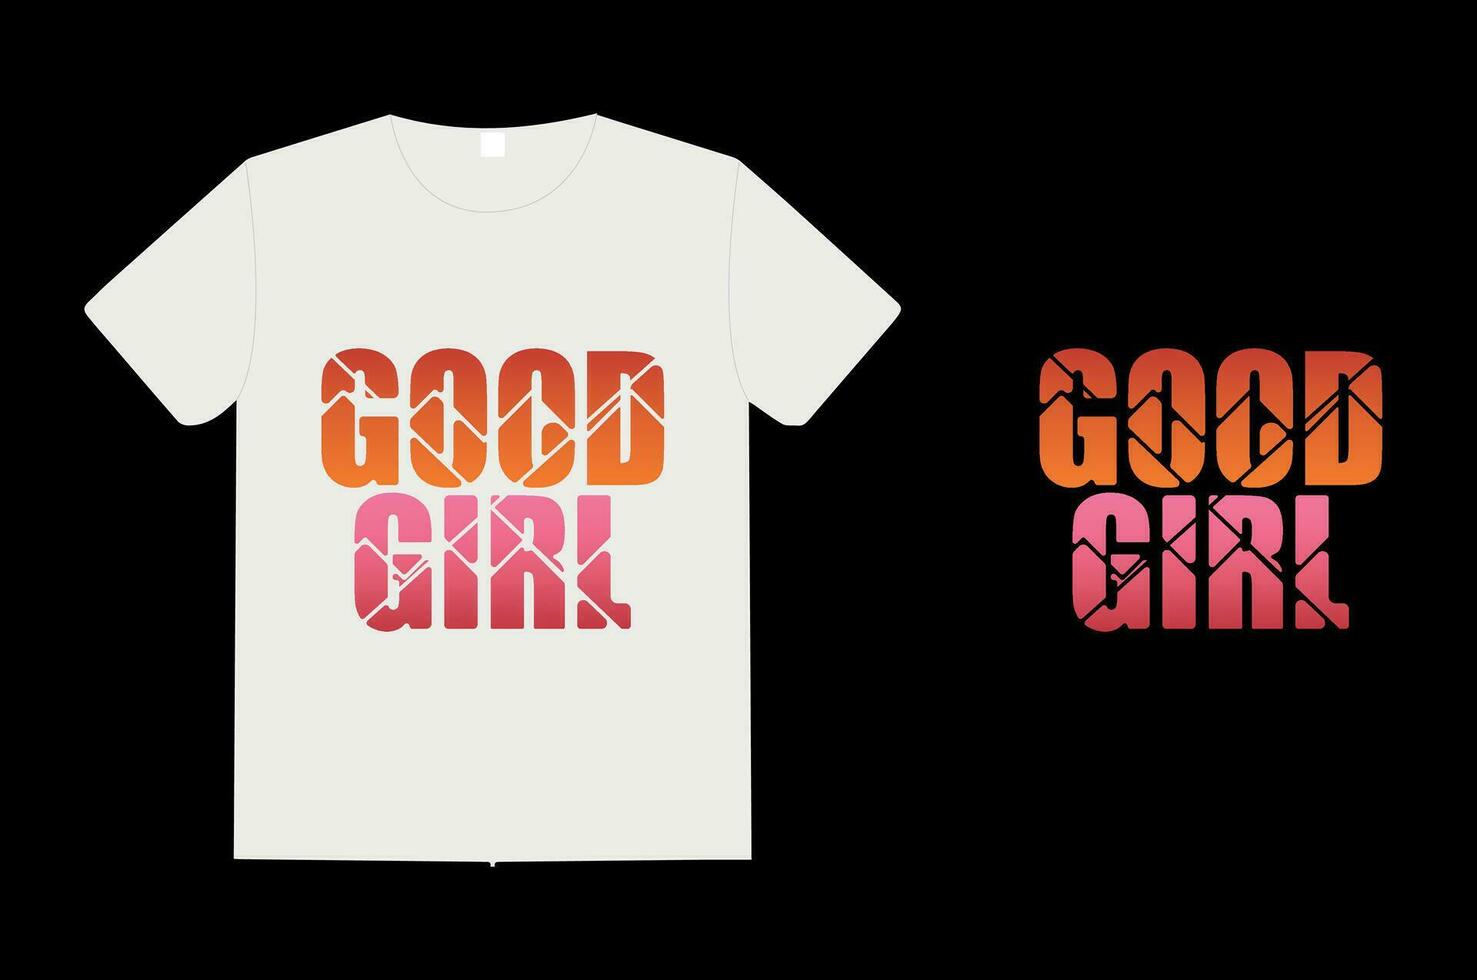 Good girl, t shirt design vector